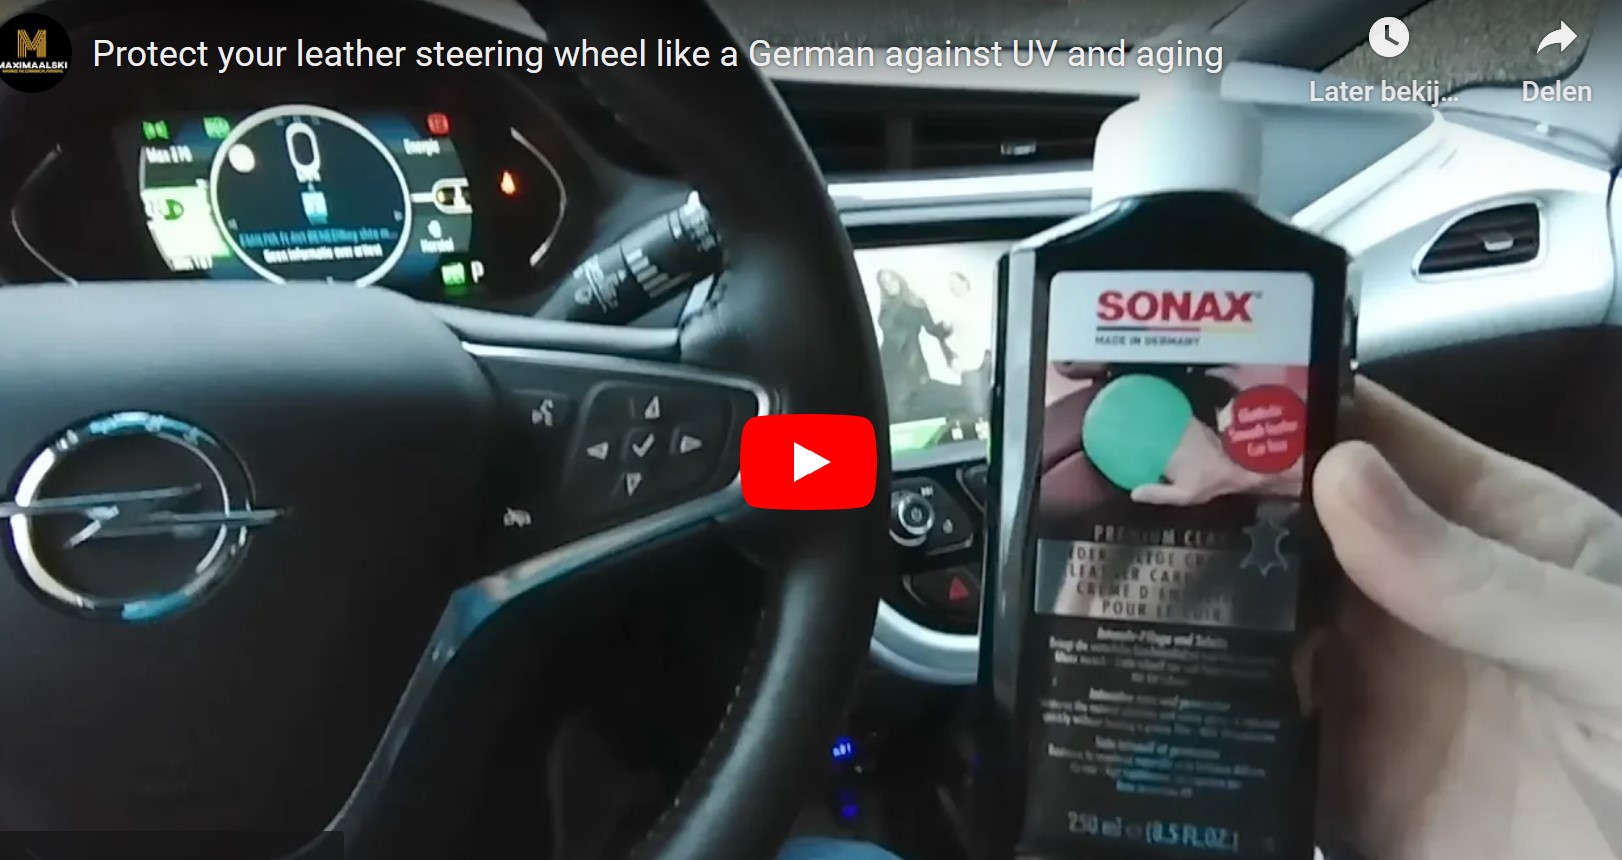 Sonax leren stuur auto beschermen